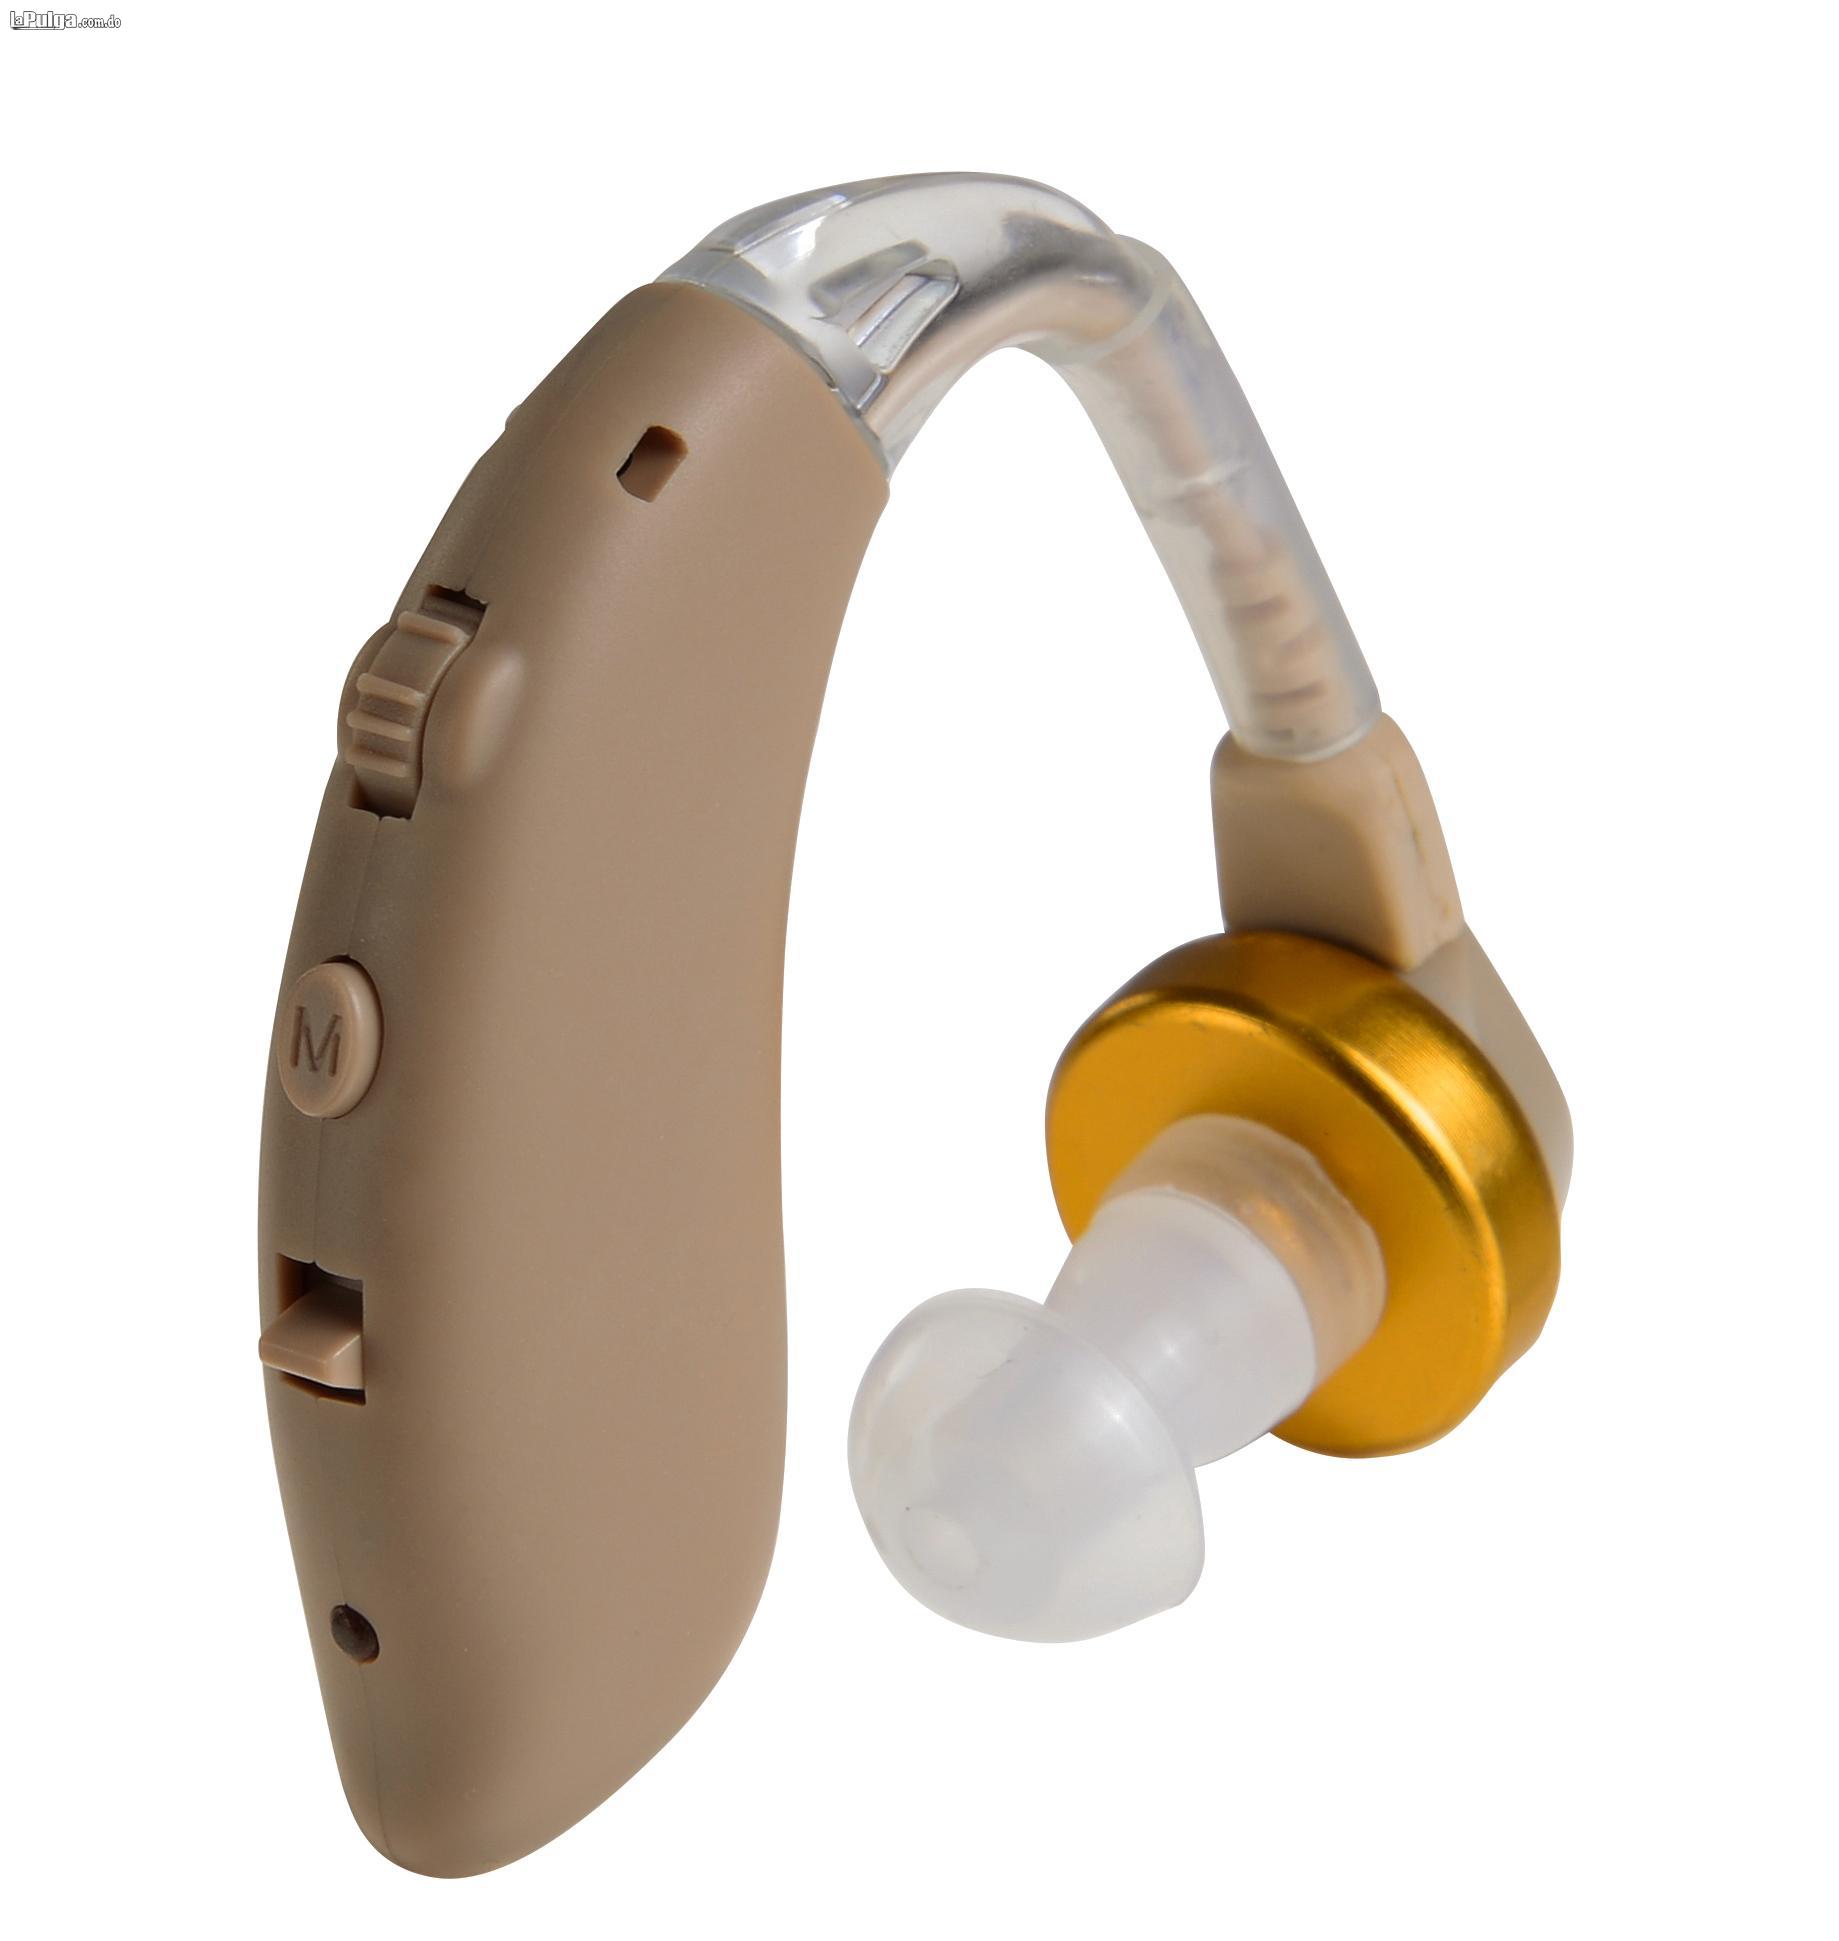 Cienlodicos Protesis de audio para sordo Audifono Amplificador de soni Foto 7018576-1.jpg